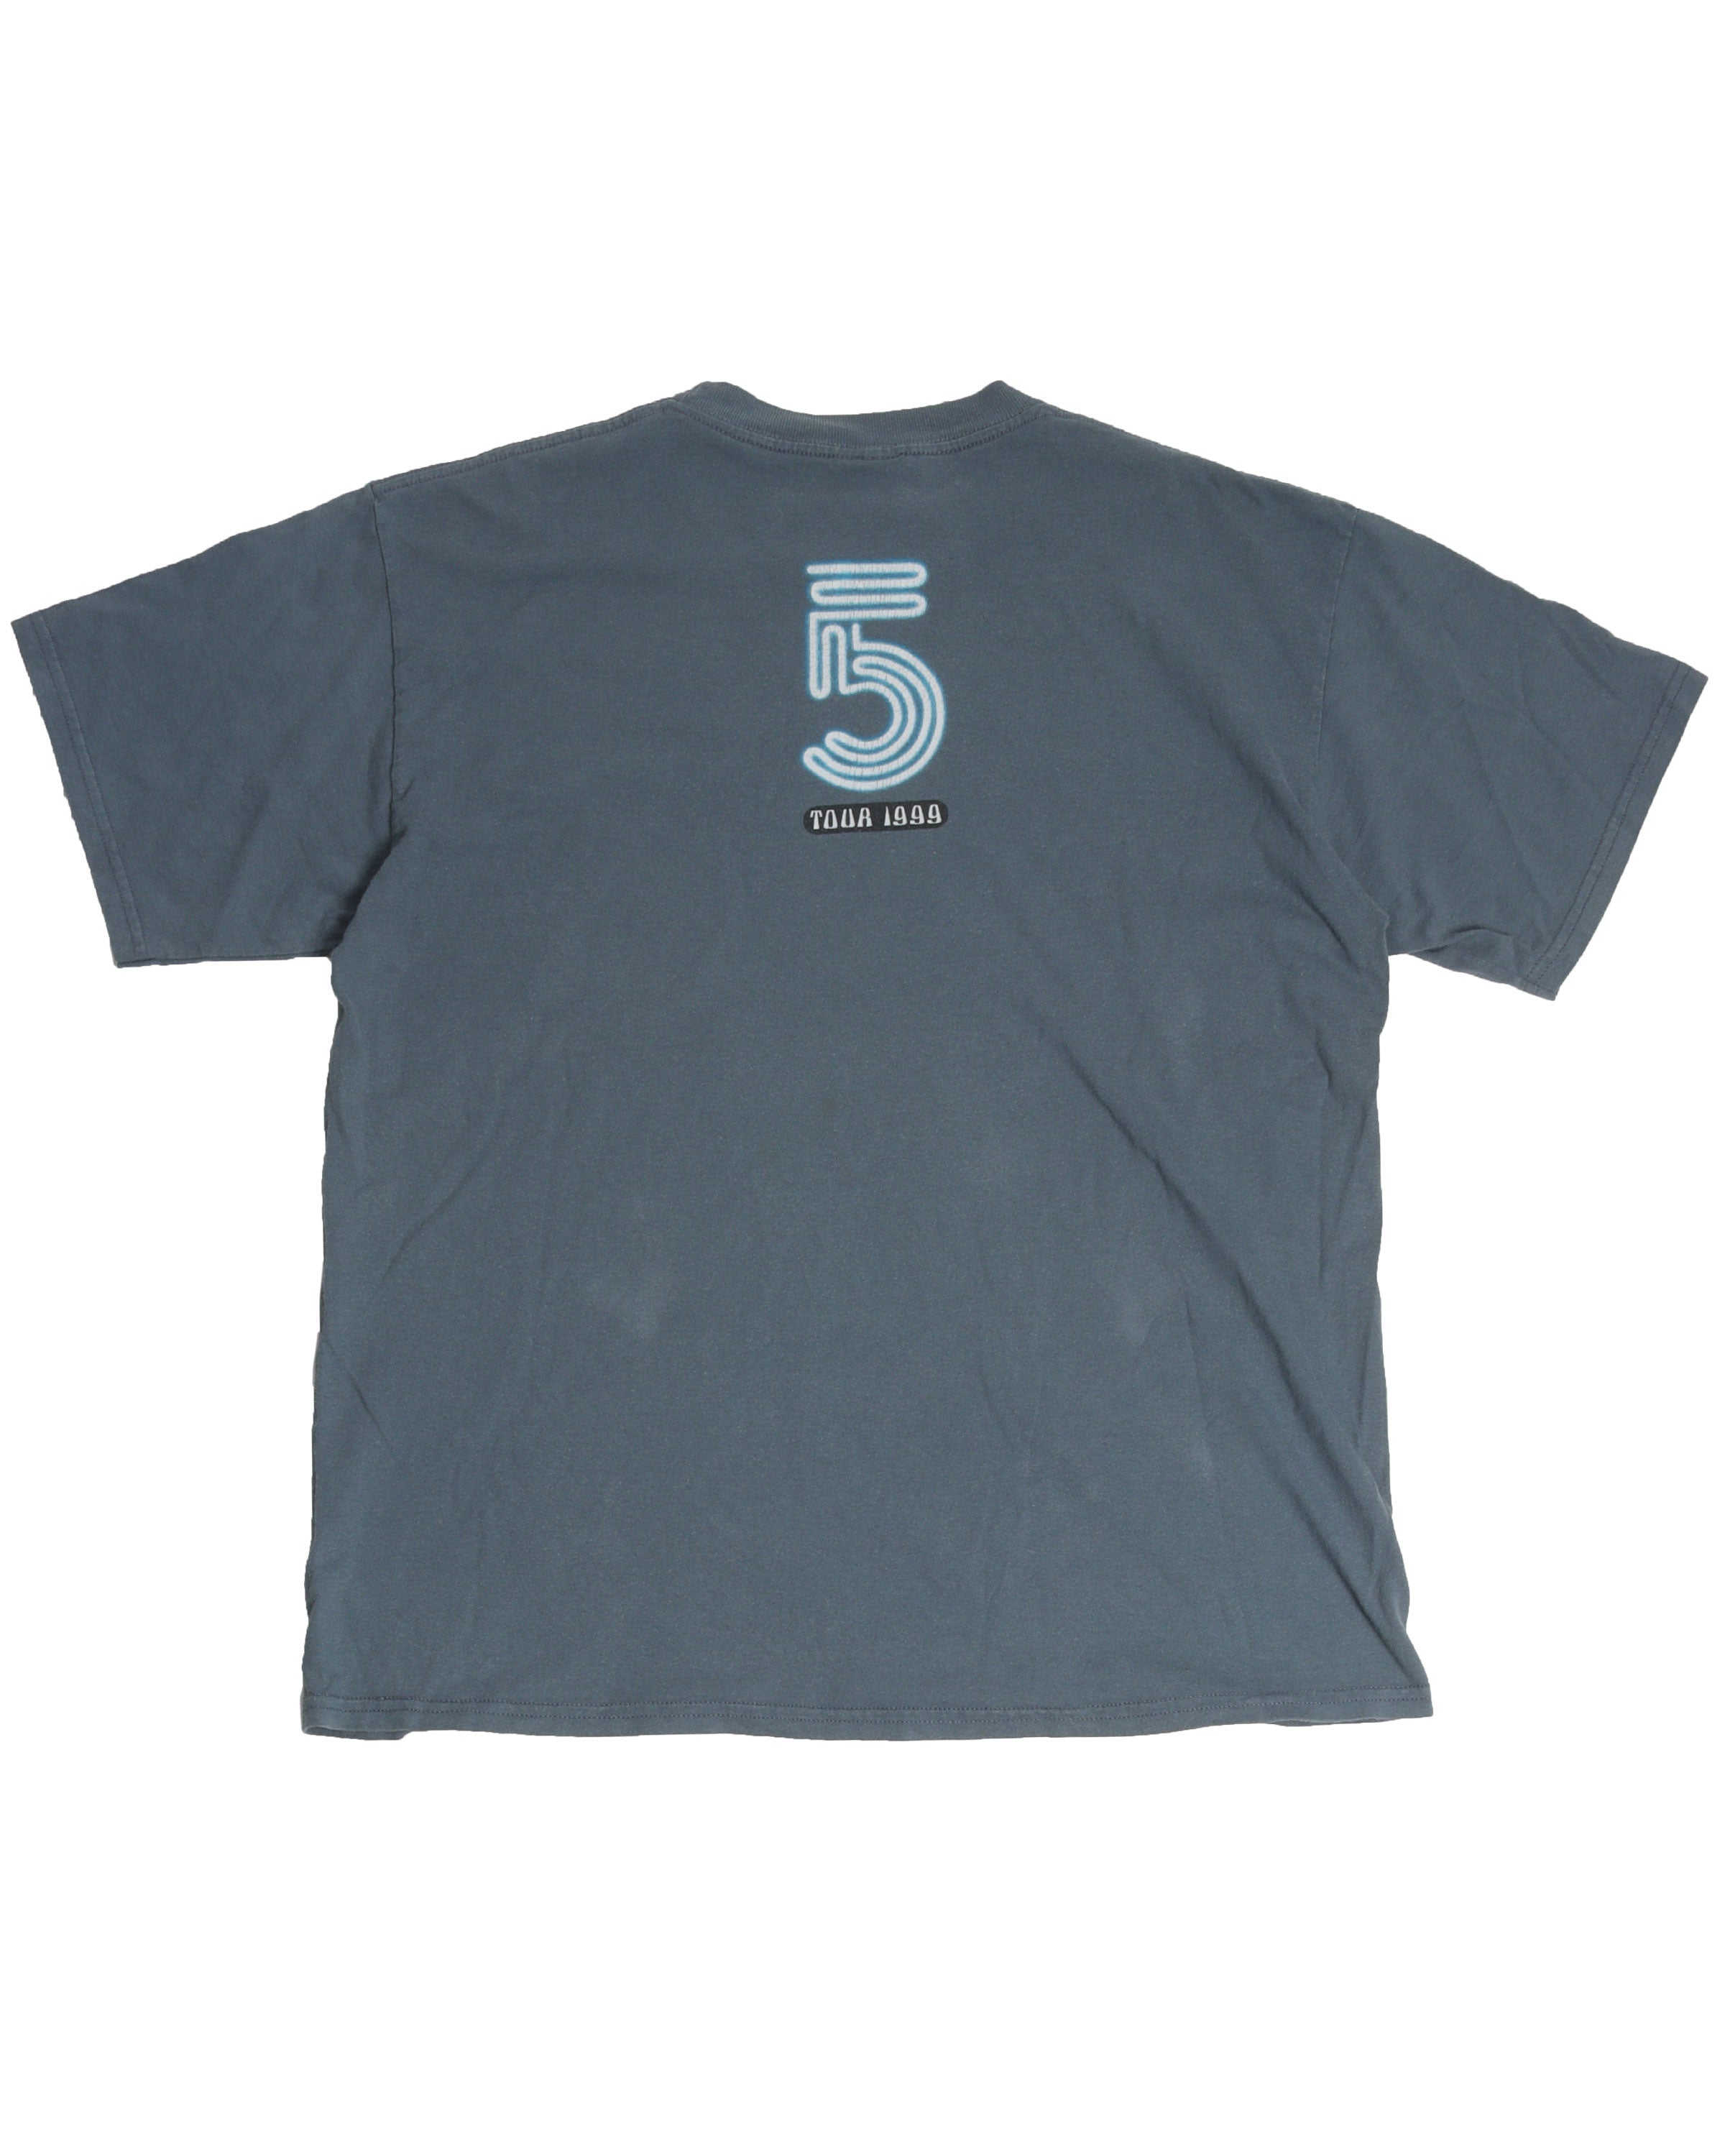 Lenny Kravitz 5 1999 Tour T-Shirt